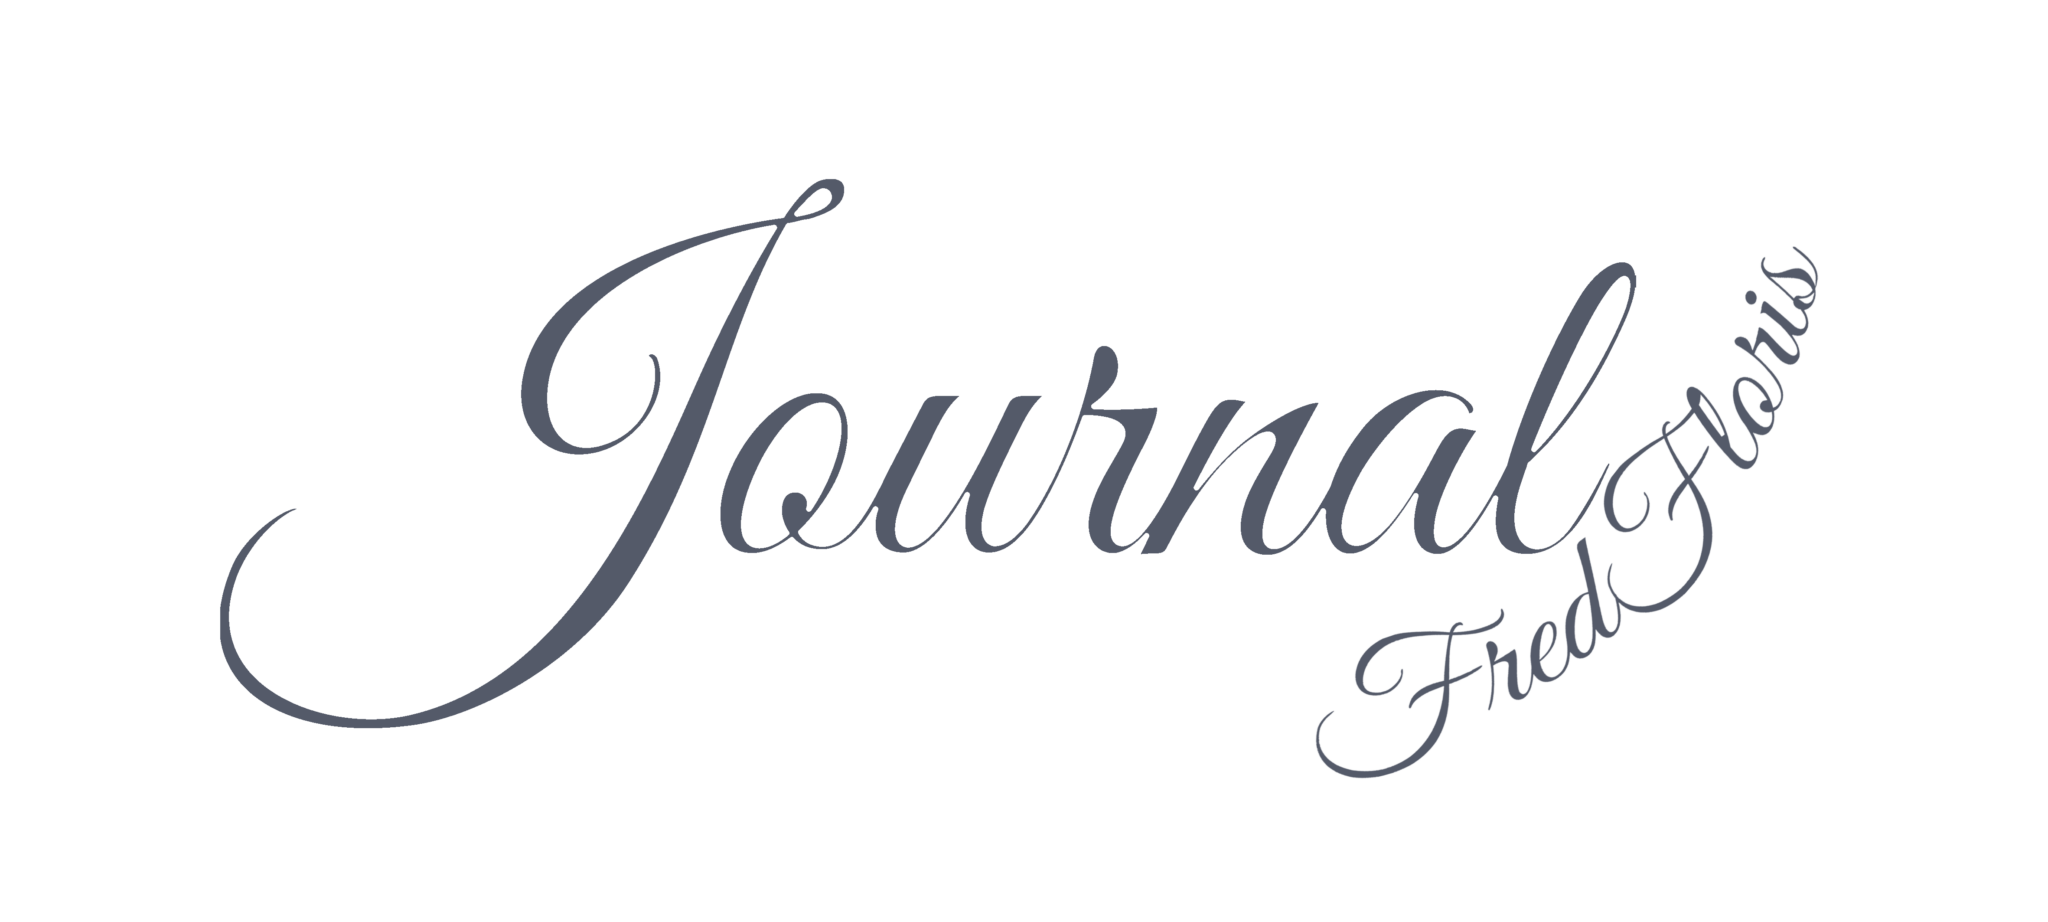 FredFloris Journal Logo